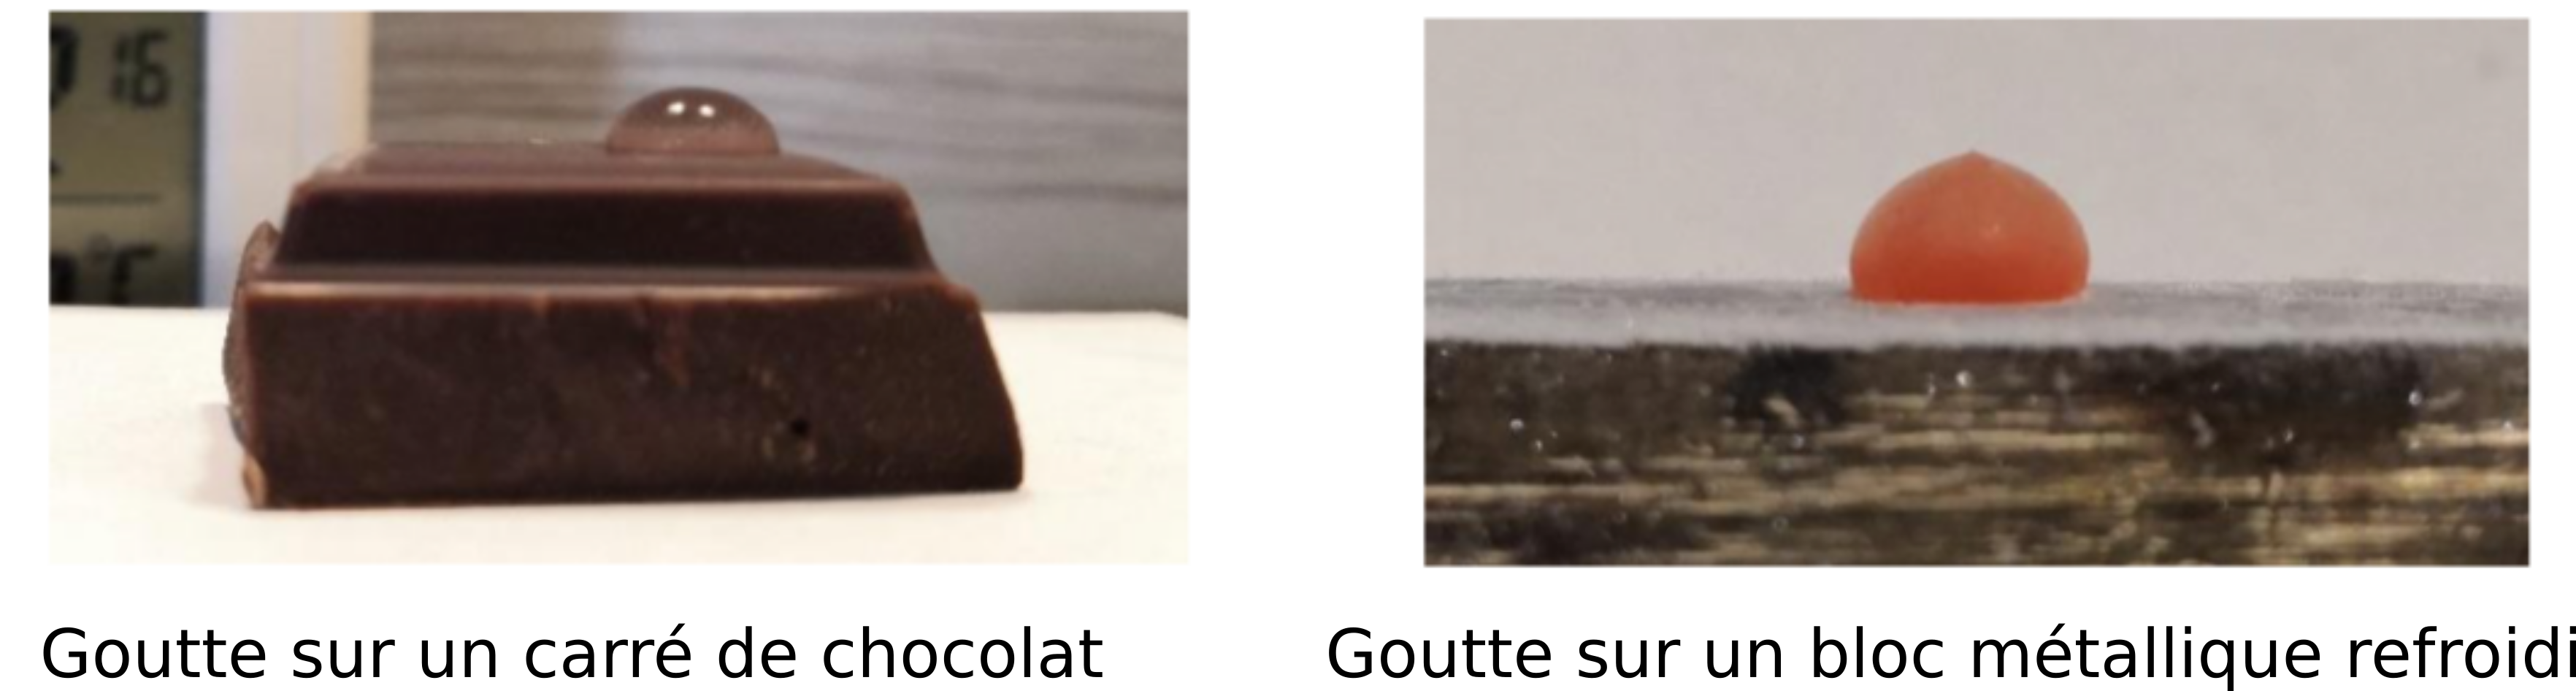 Mouillage d'une goutte d'eau sur un carré de chocolat et gel d'une goutte sur un support métallique refroidi